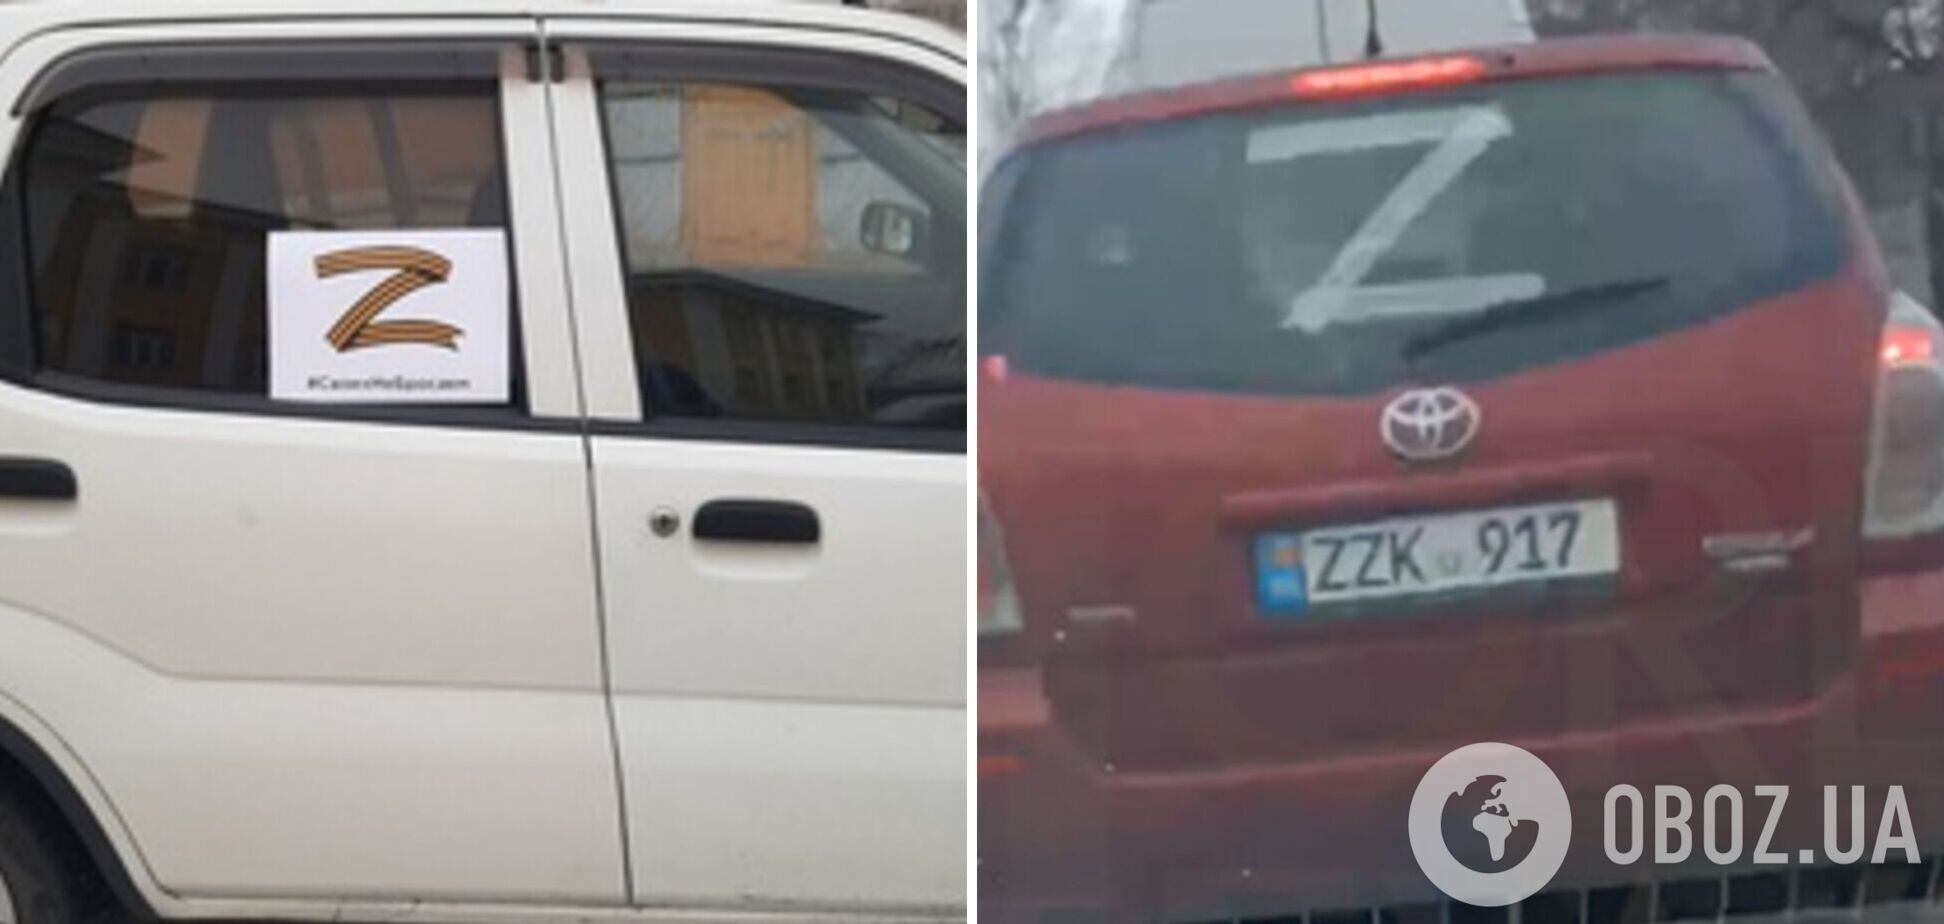 У Криму зменшилася кількість автомобілів із символом 'Z'